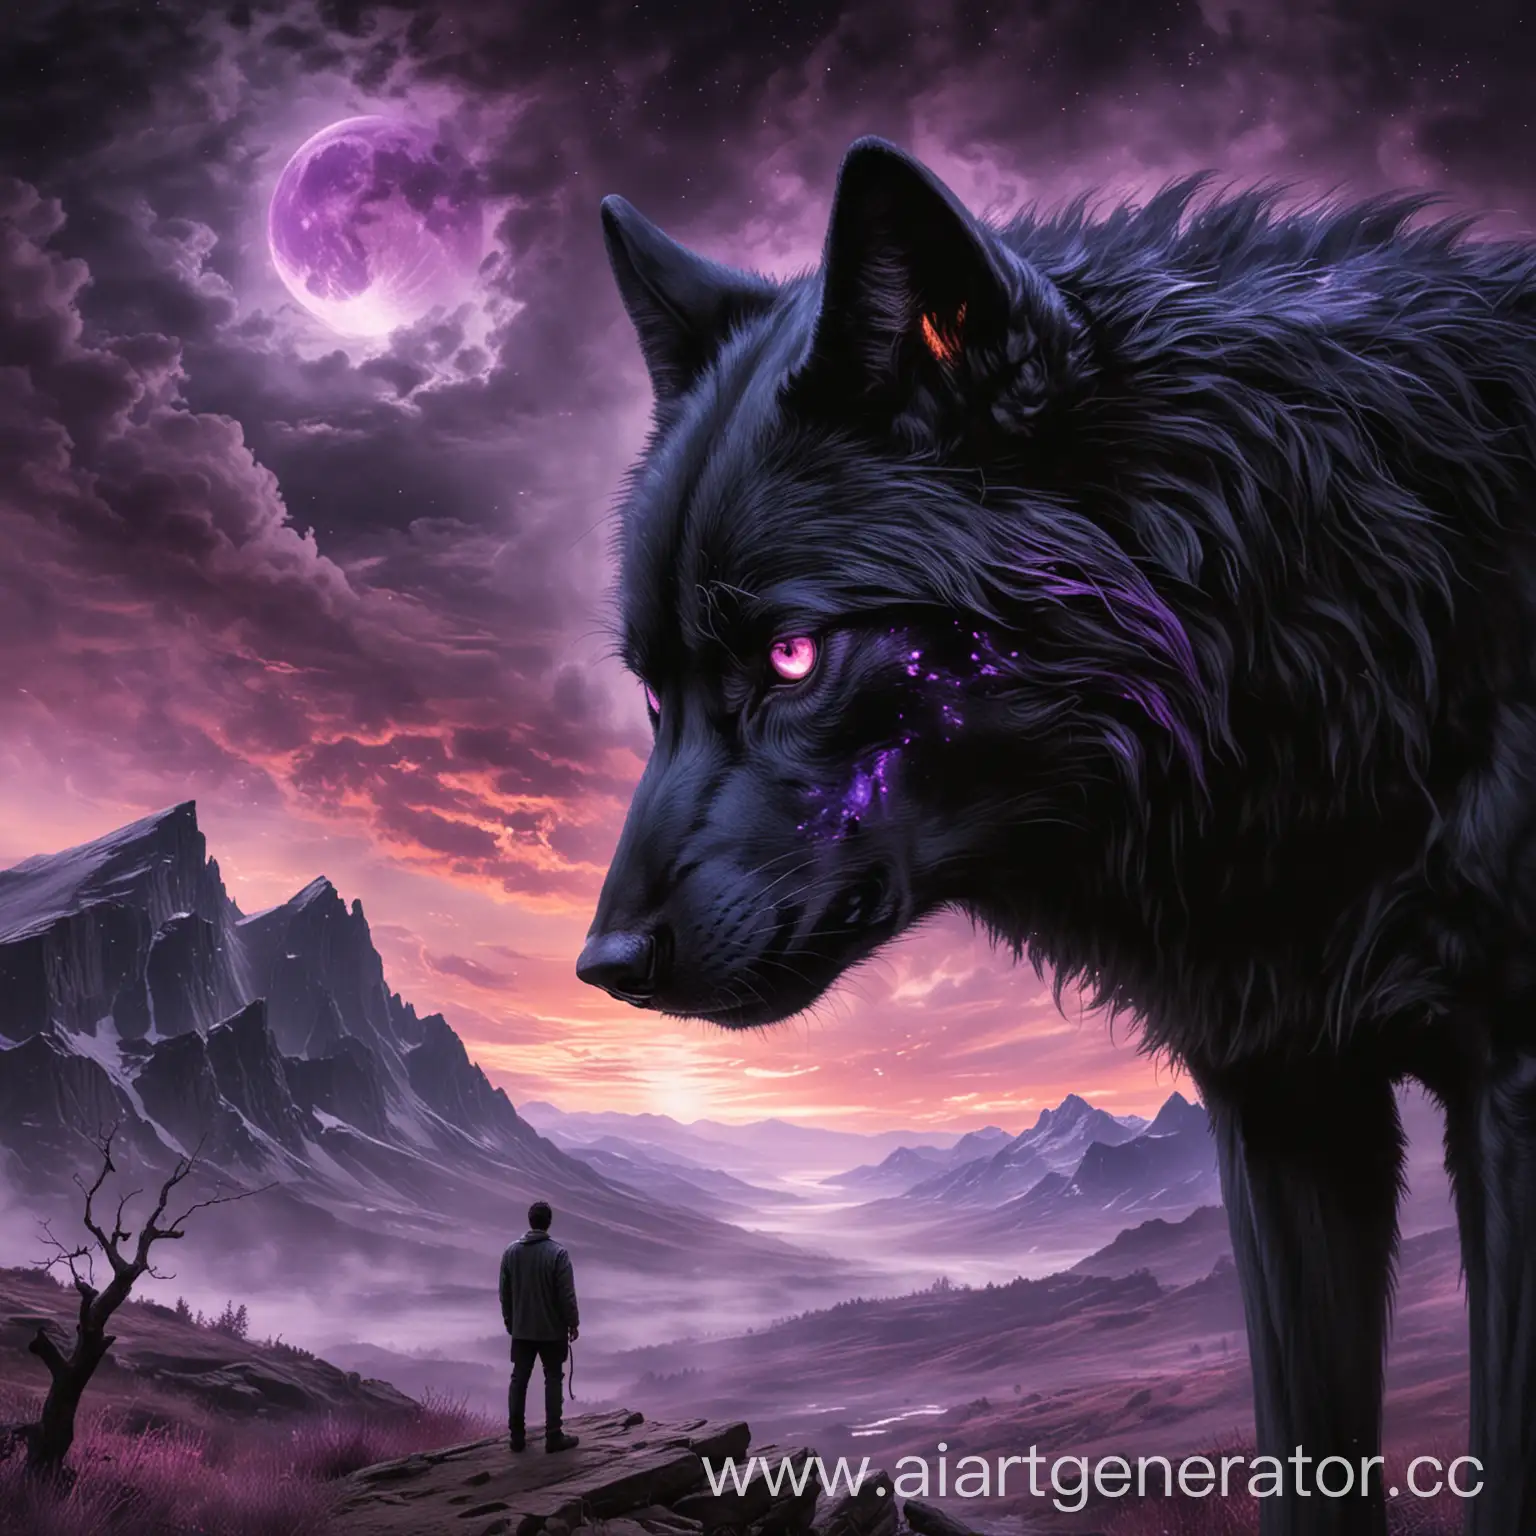 Человек смотрящий на пустоту, откуда на него смотрит чёрный волк, с горящими фиолетовыми глазами.